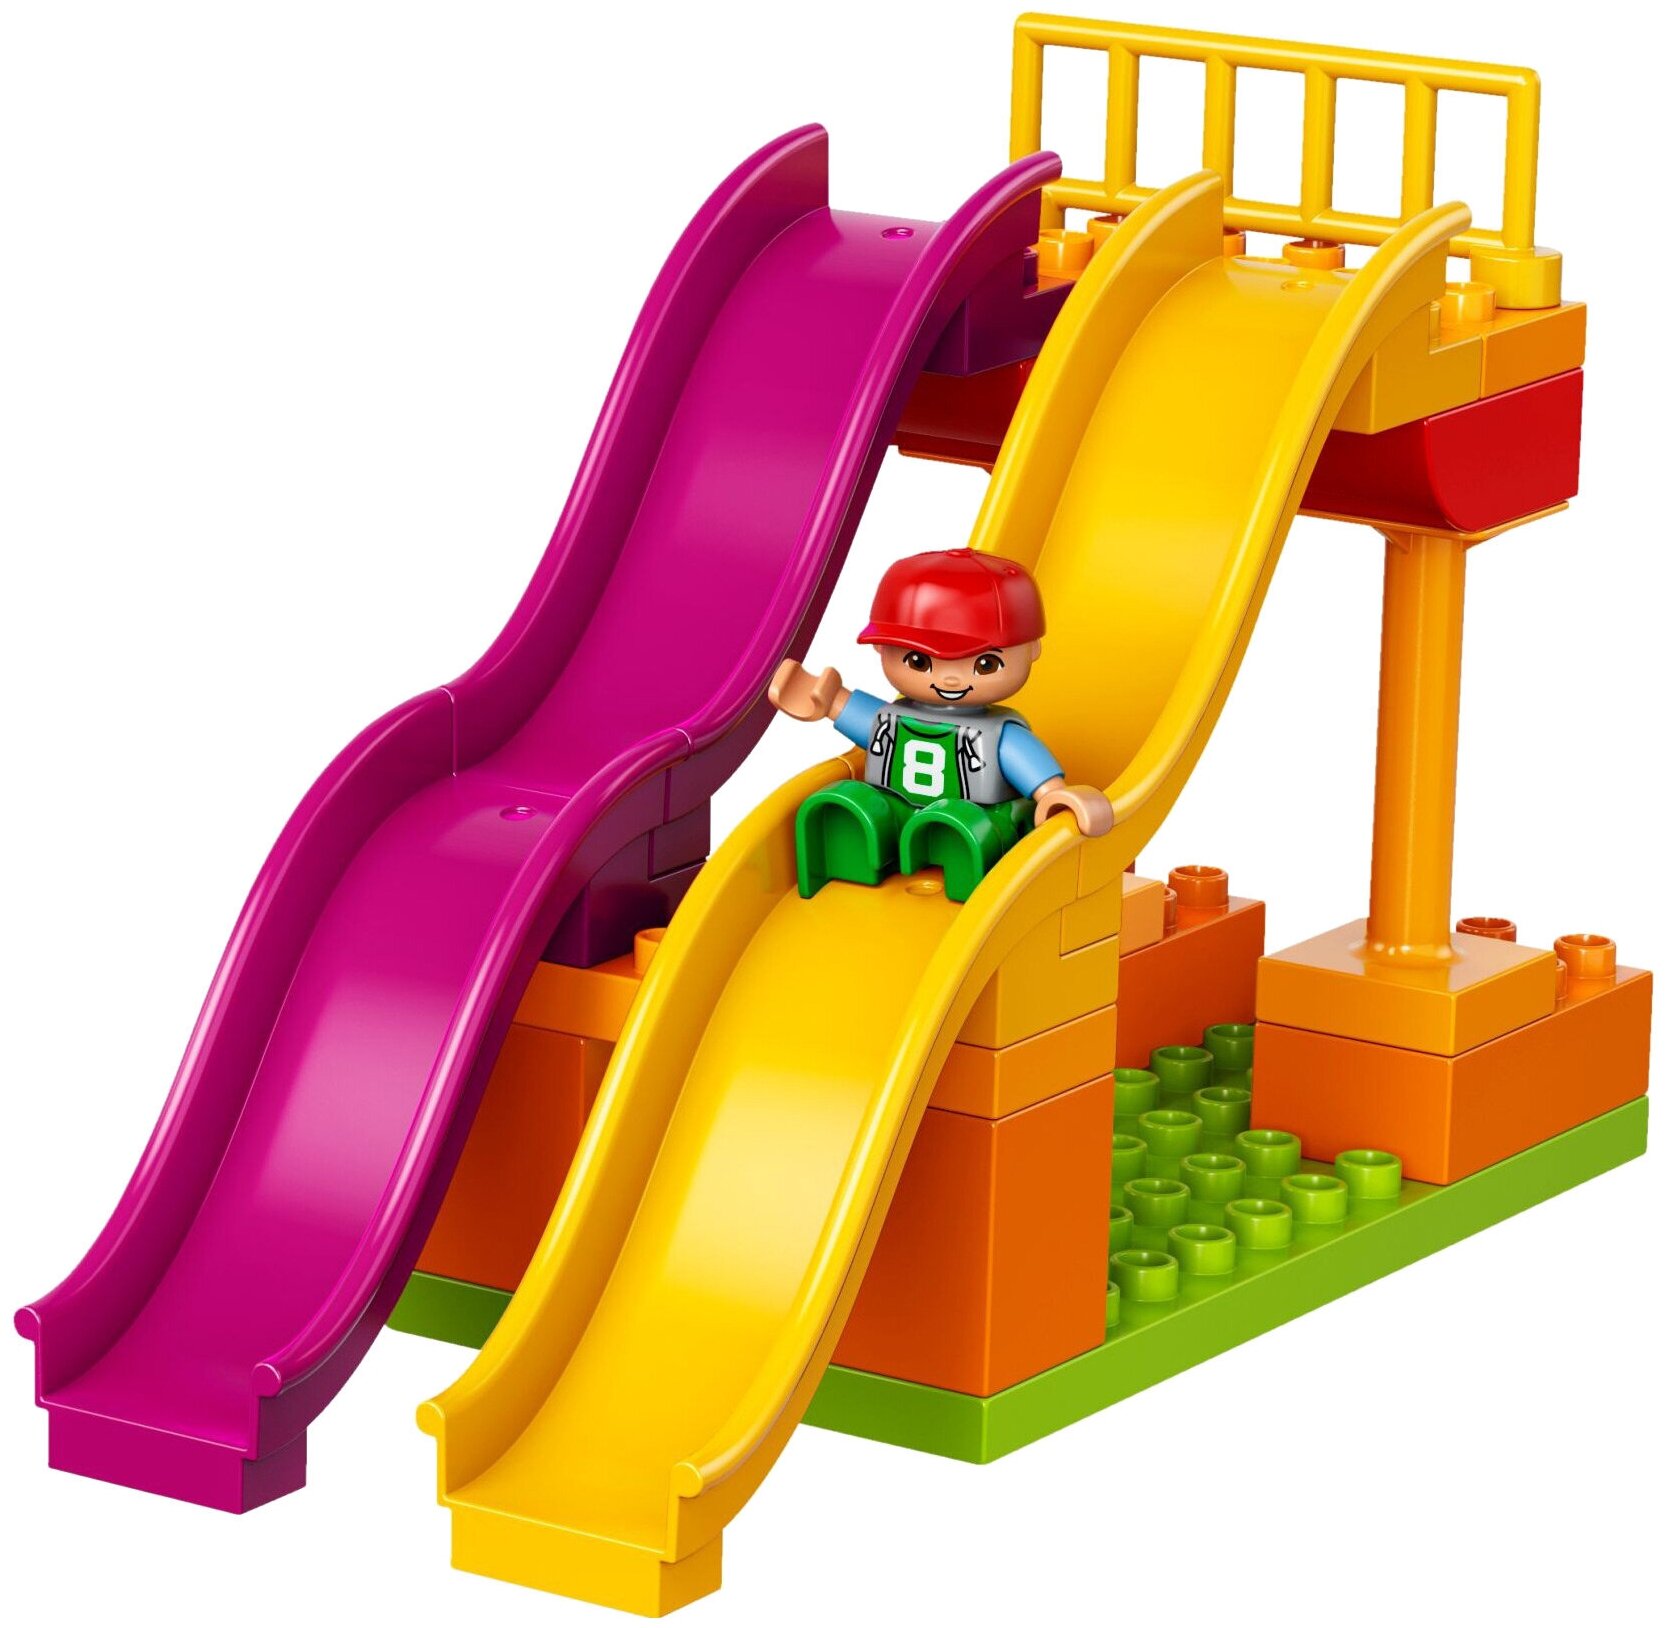 LEGO DUPLO Большой парк аттракционов - фото №8